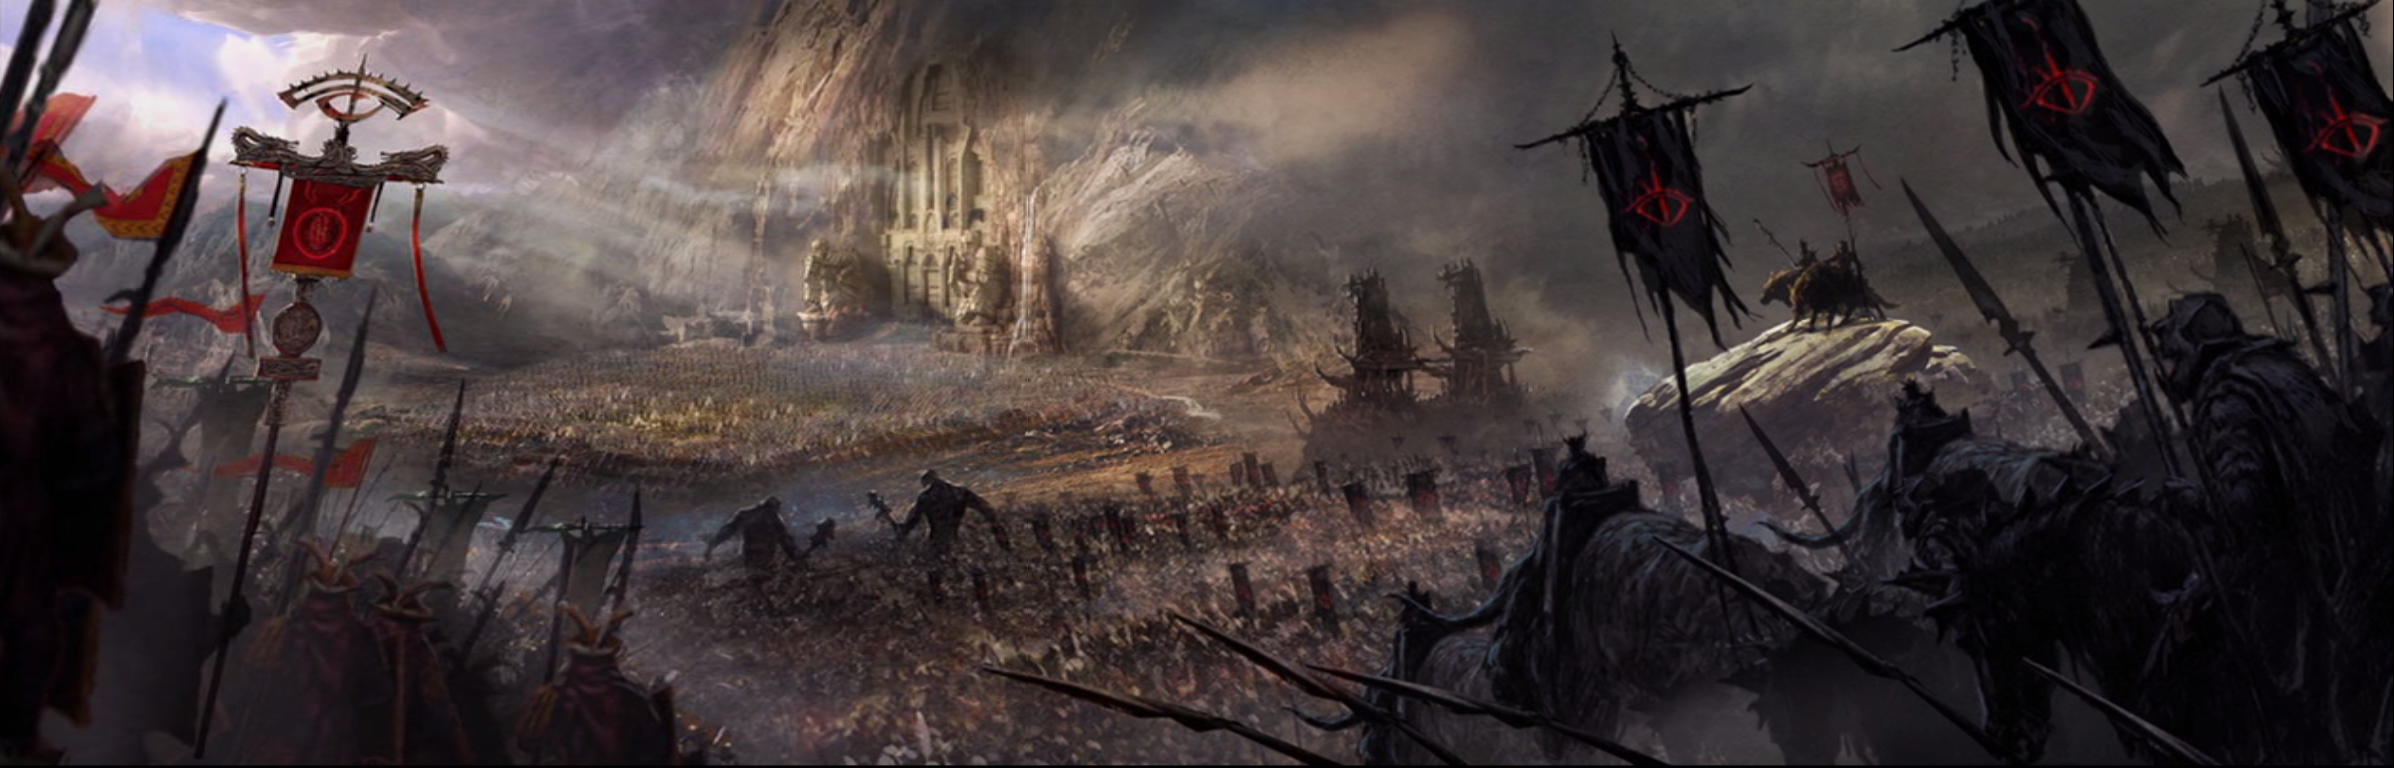 Battaglia di Dale | Tolkienpedia | Fandom